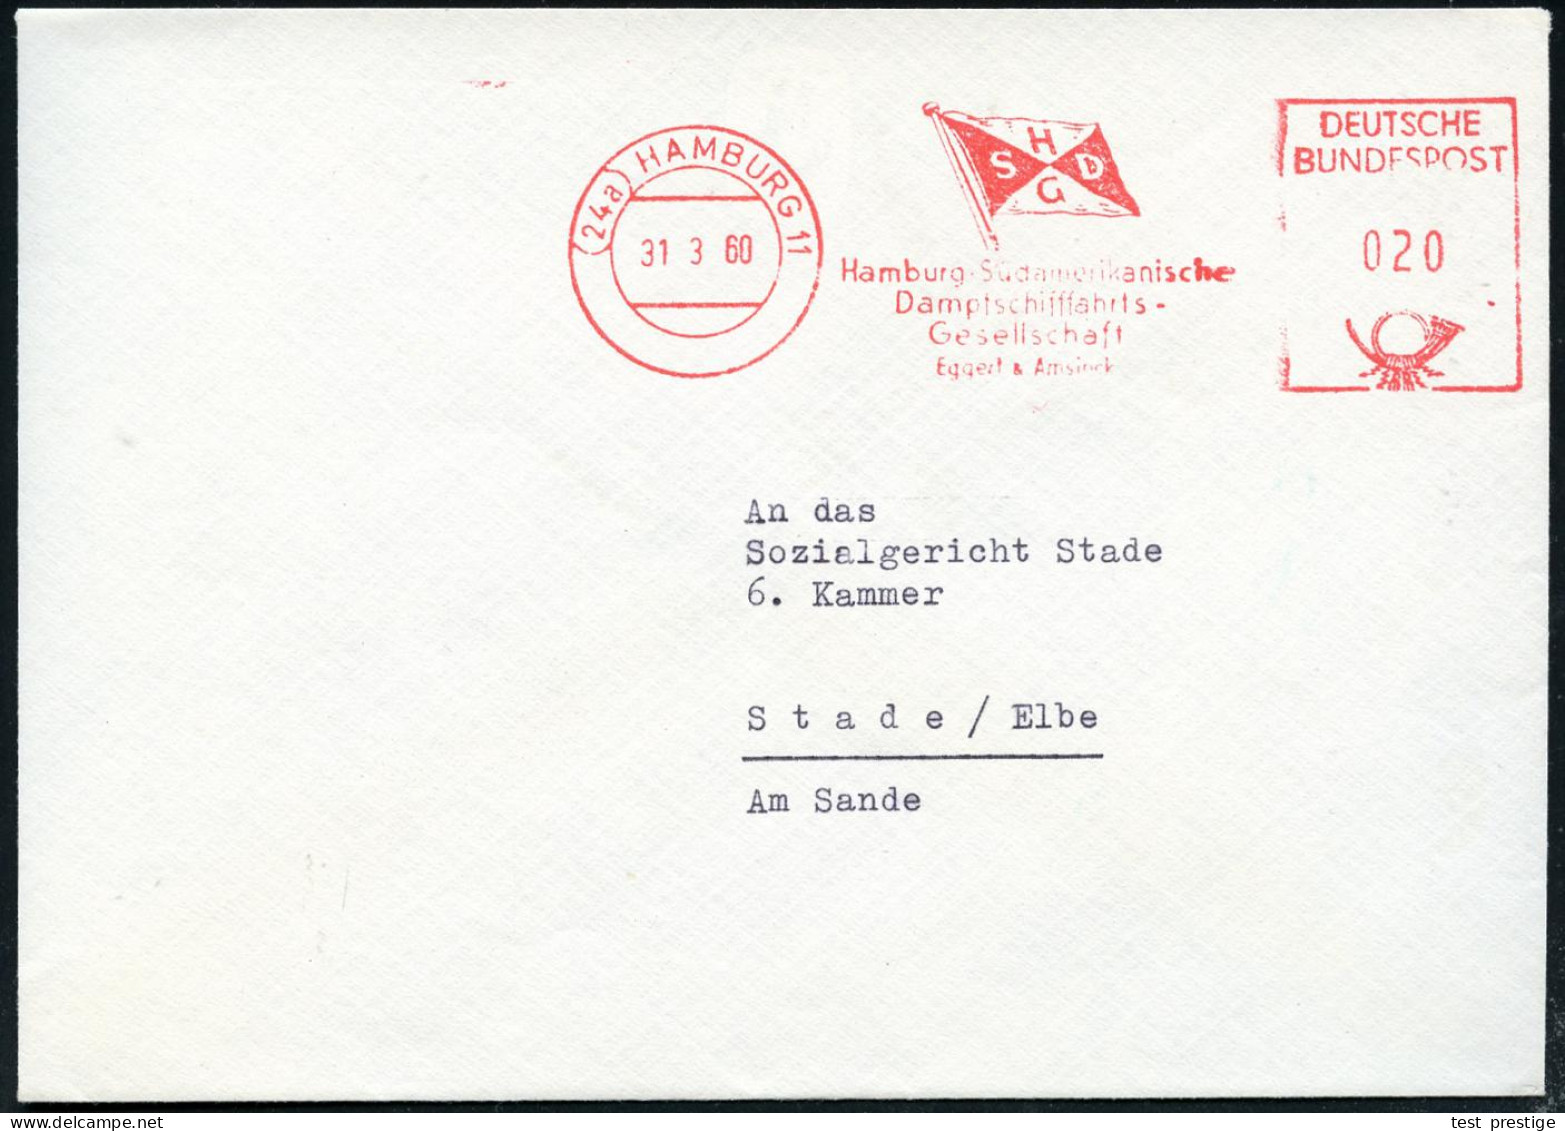 (24a) HAMBURG 11/ HSDG/ Hamburg-Südamerikanische/ Dampfschiffahrts/ Ges. 1960 (31.3.) AFS Postalia (Reederei-Flagge) Rs. - Maritime